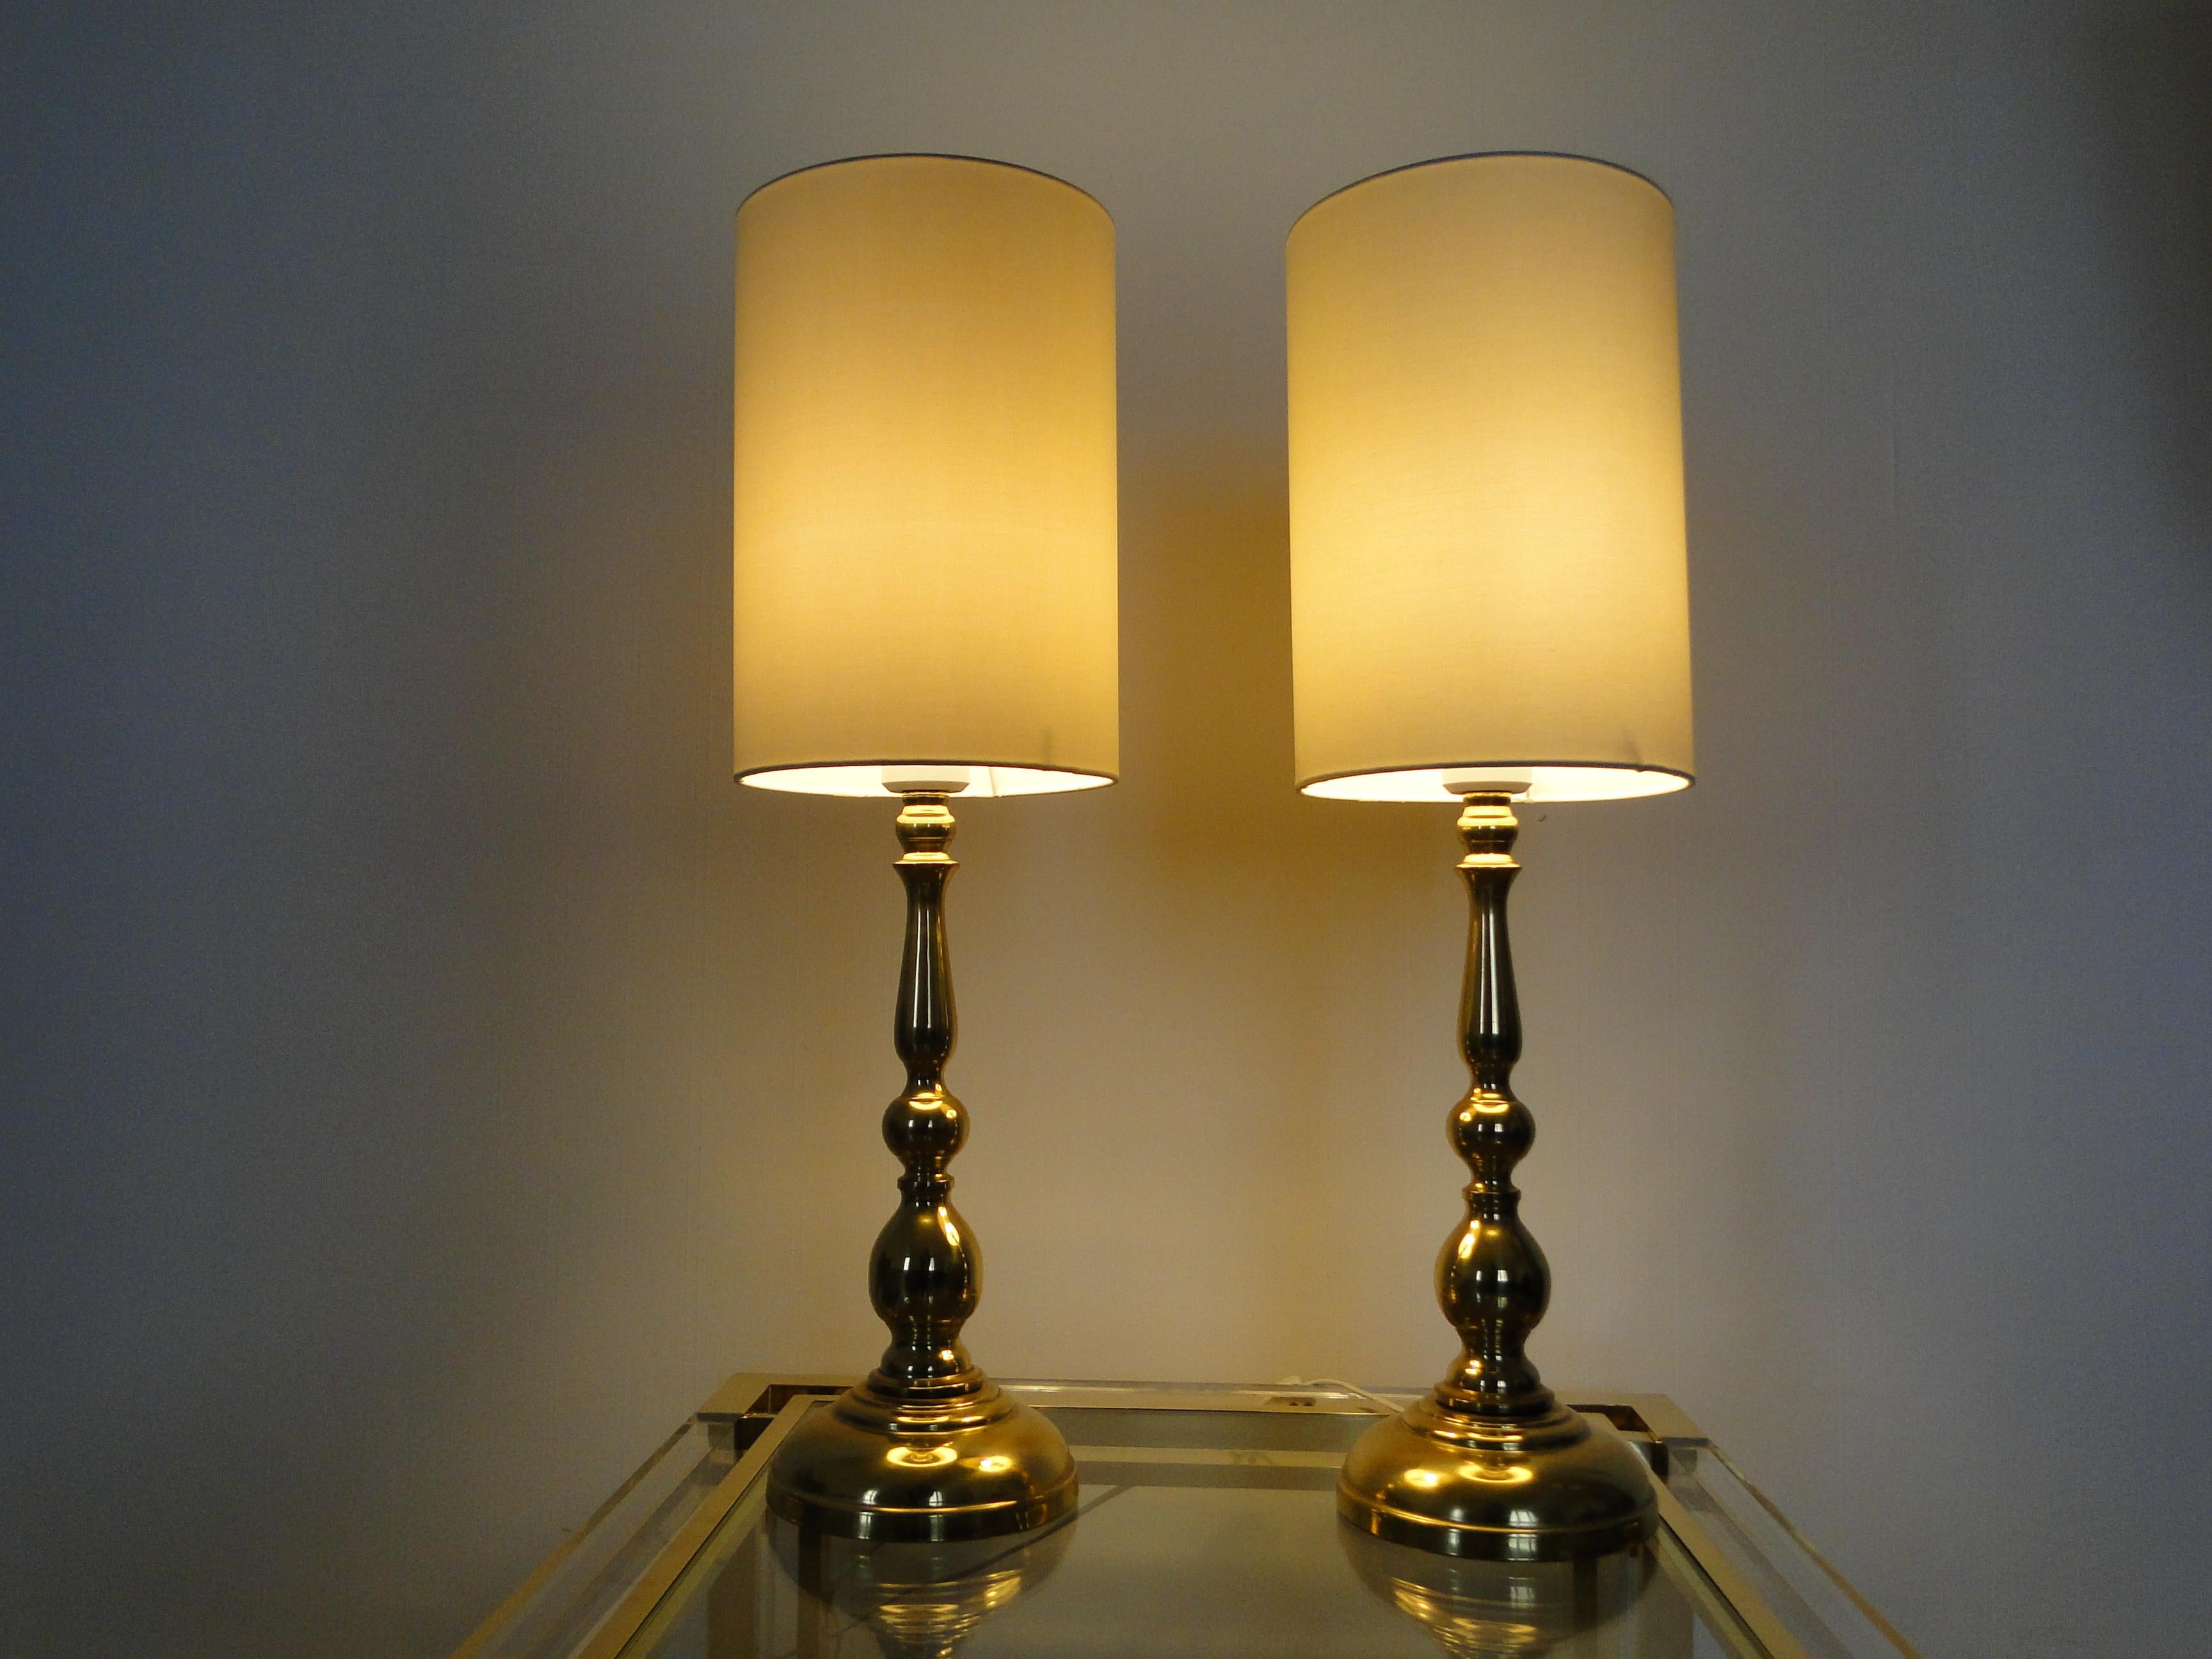 Magnifique paire de lampes scandinaves en laiton des années 1960.
Ces lampes de forme bulbeuse du milieu du siècle ont un corps en laiton poli et un design de candélabre.

Très bon état.

Mesures : . Hauteur totale avec abat-jour : 67 cm (26.38